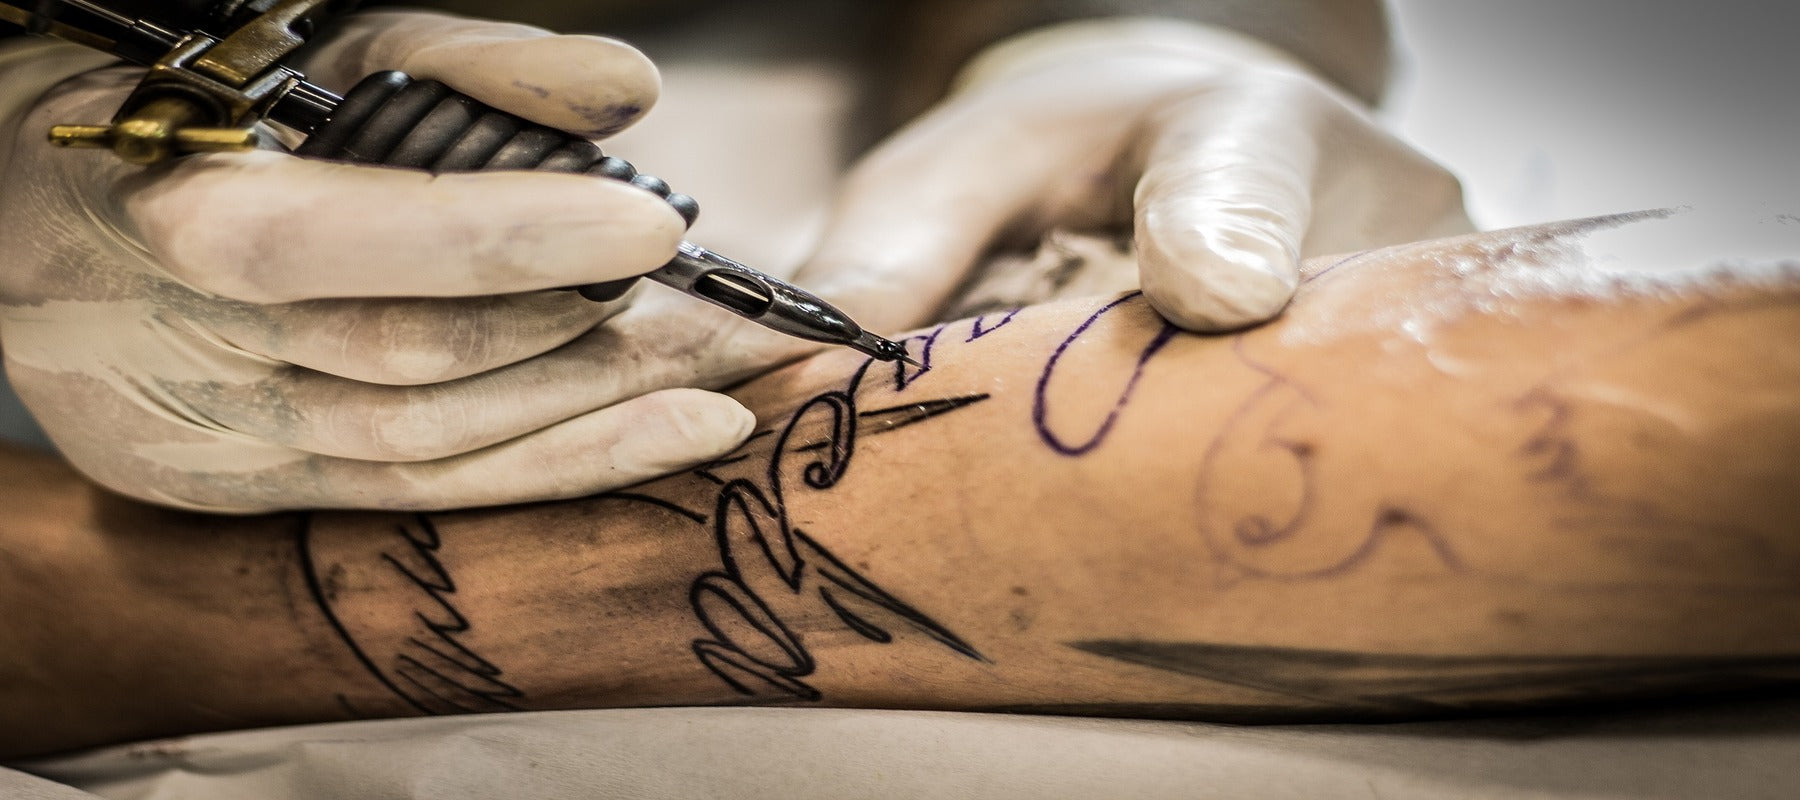 Homme en train de se faire tatouer un tatouage tribal